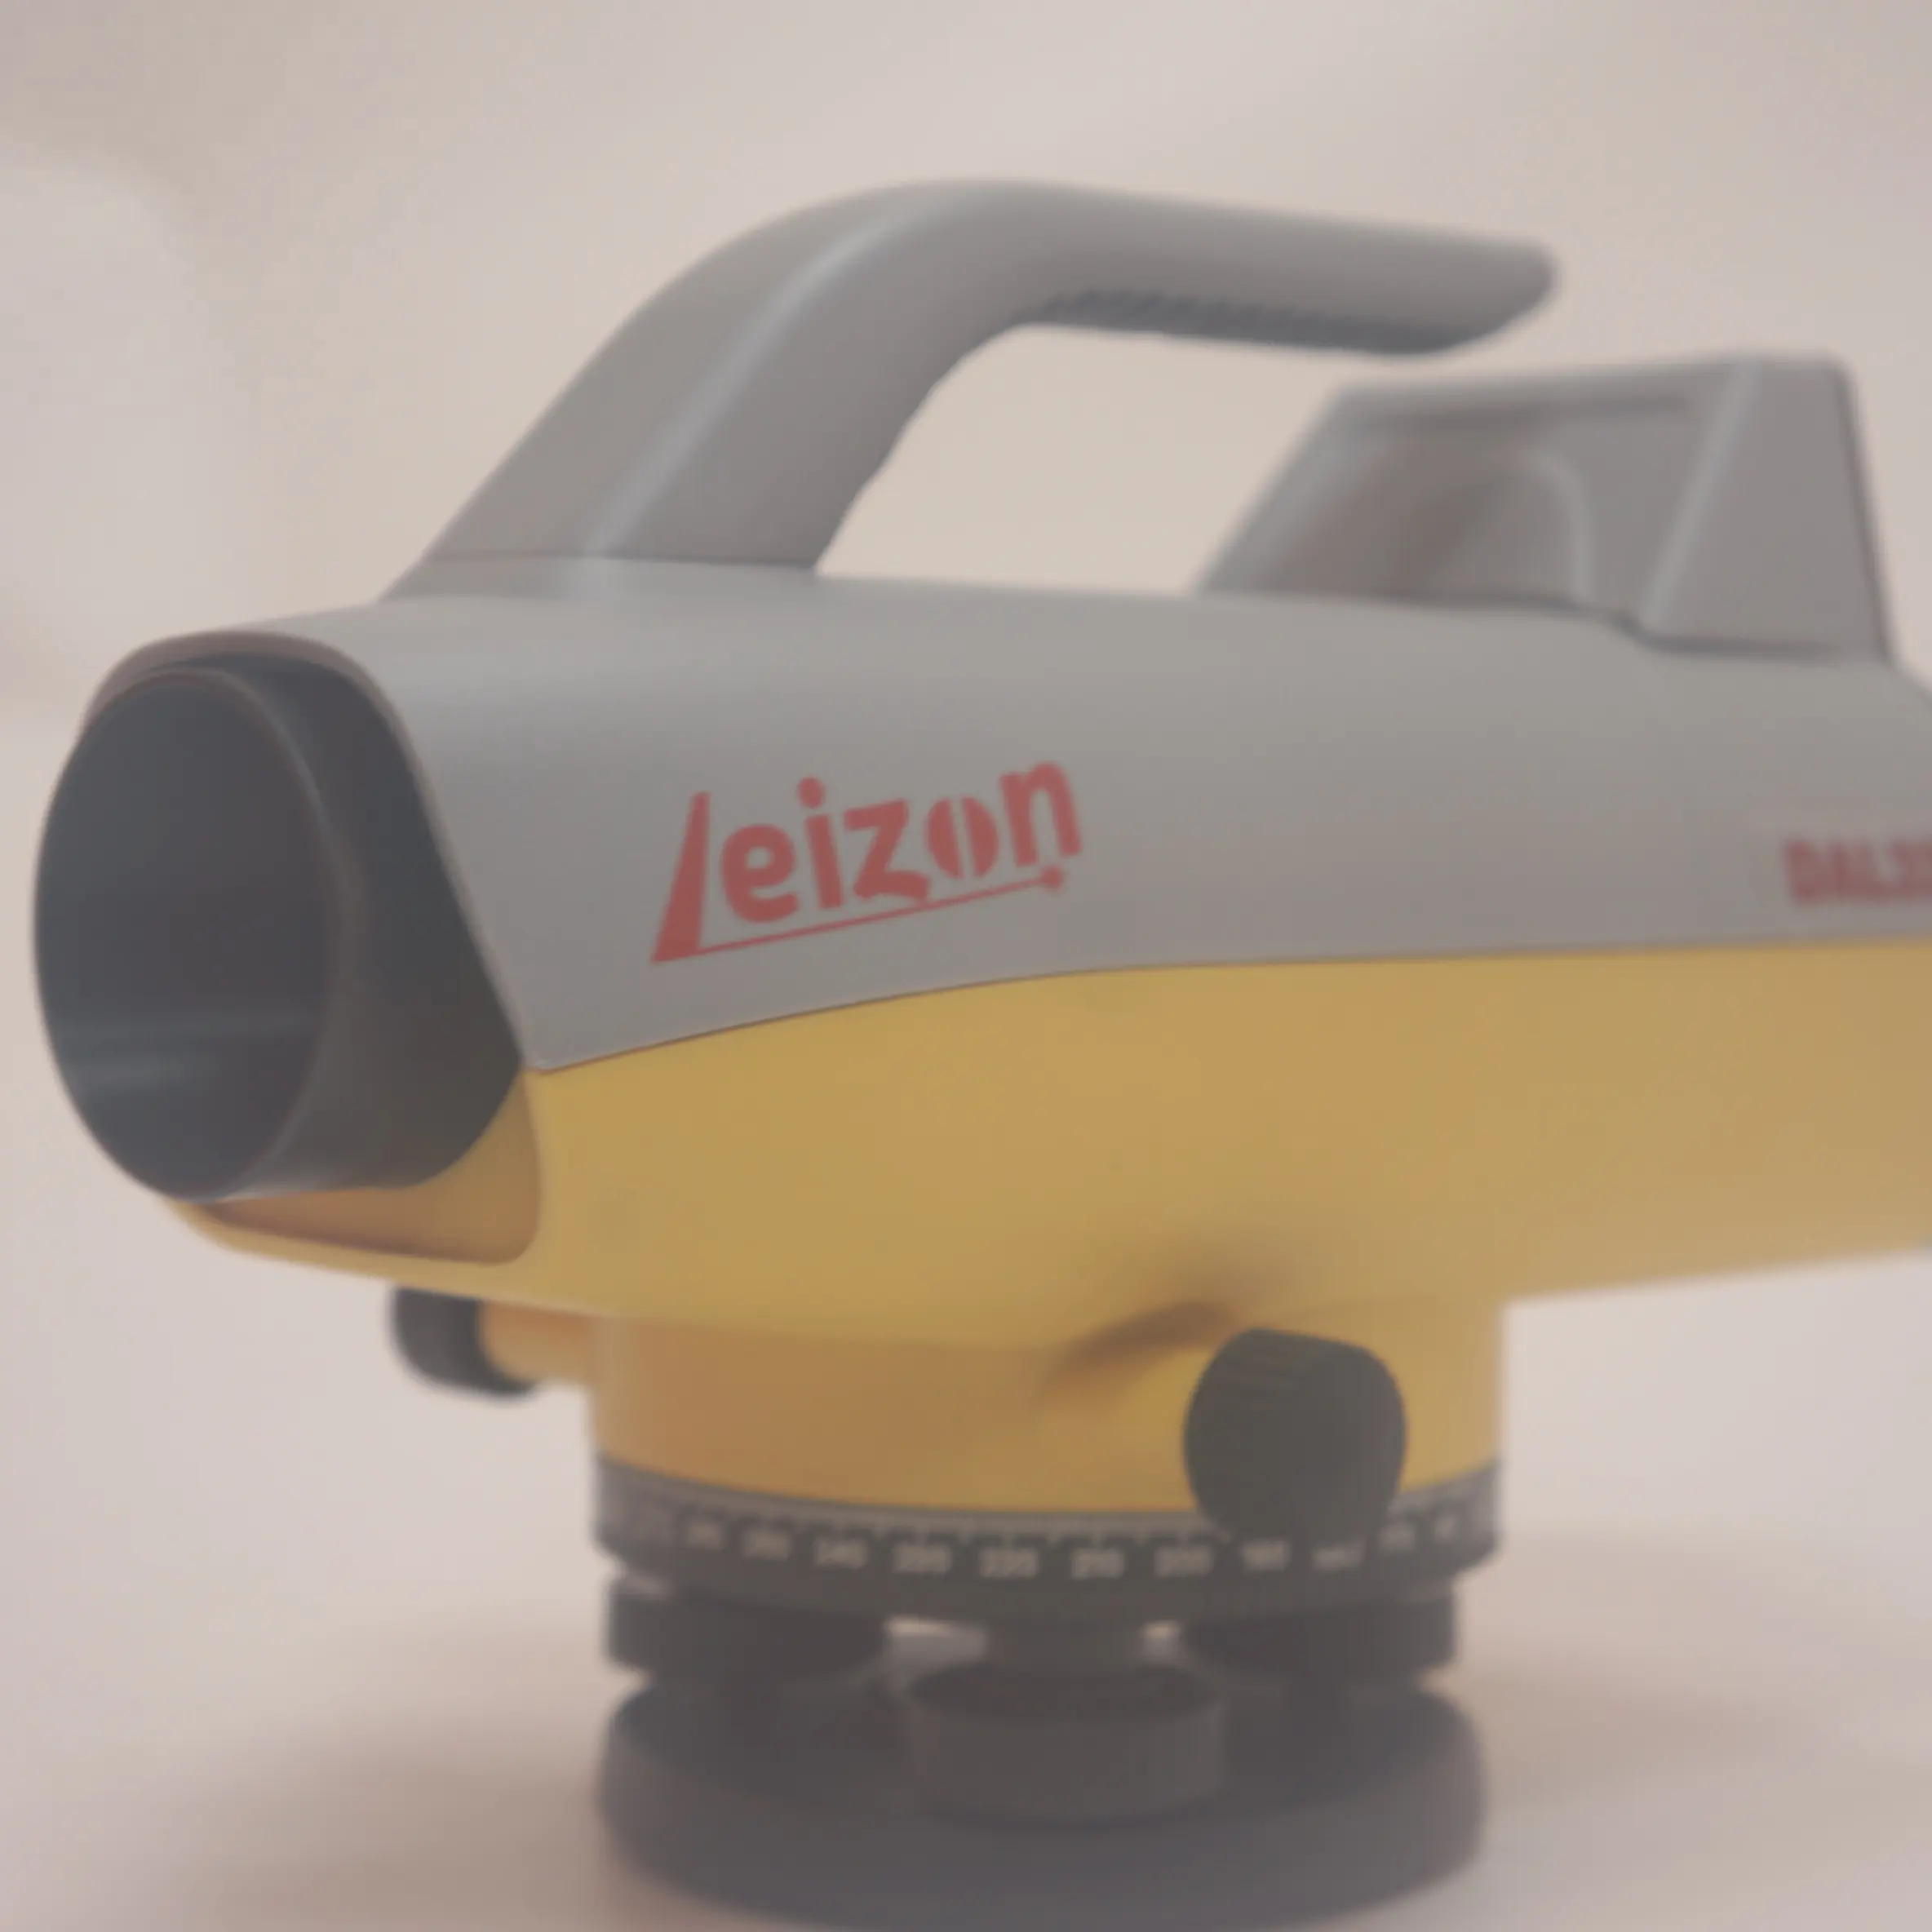 Etkili Leizon Dal32 otomatik seviye yüksek performanslı tesviye ölçme aleti